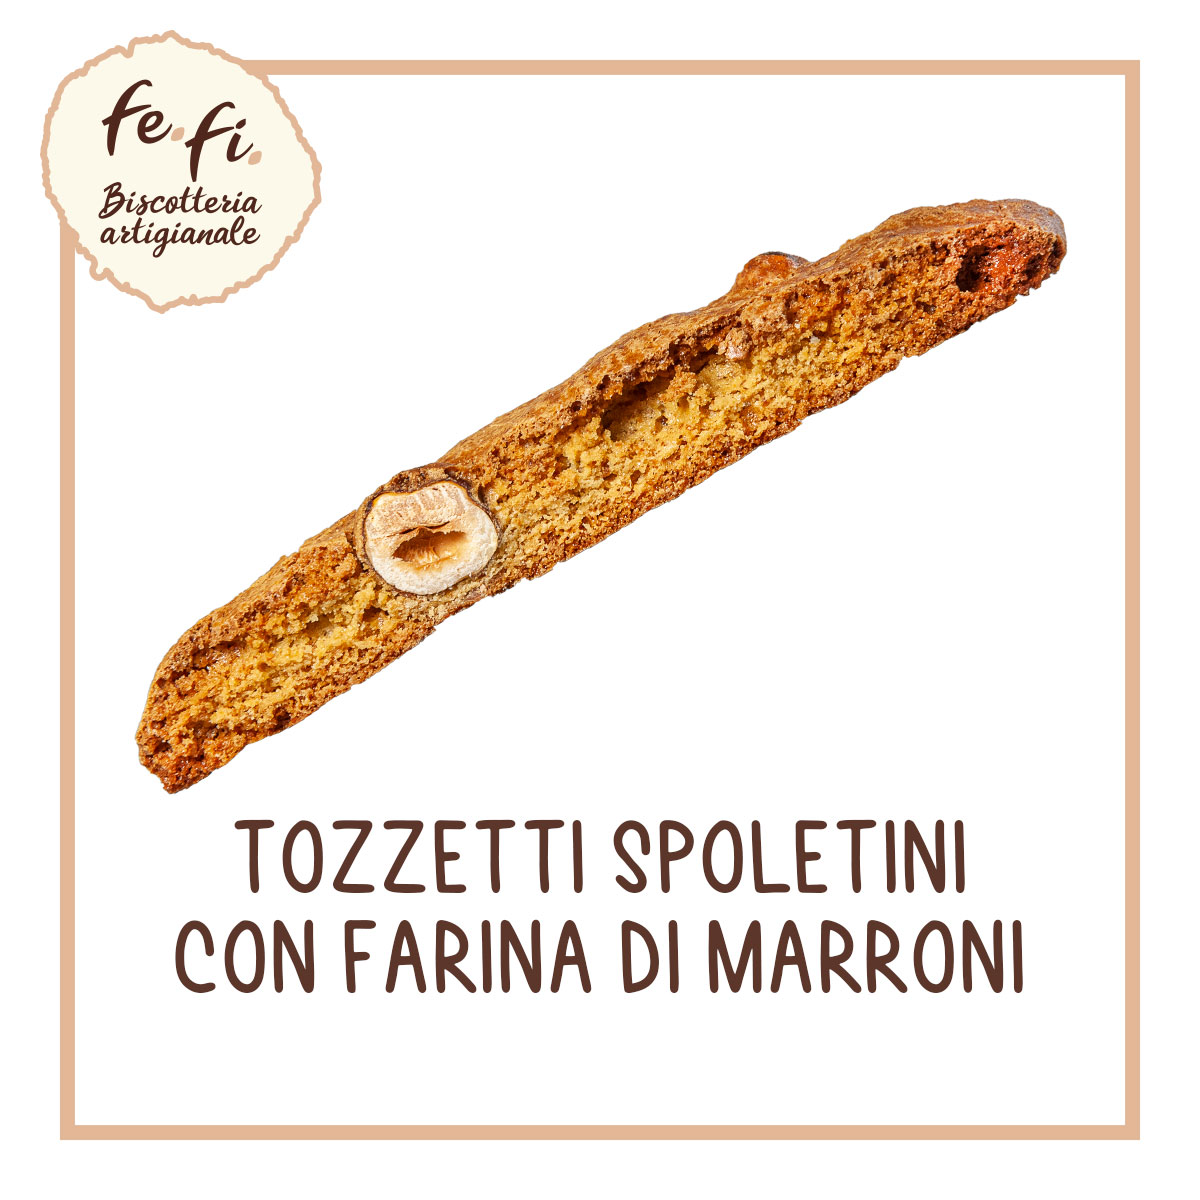 Tozzetti Spoletini con Farina di Marroni – Biscotteria Artigianale Fe.Fi. Spoleto